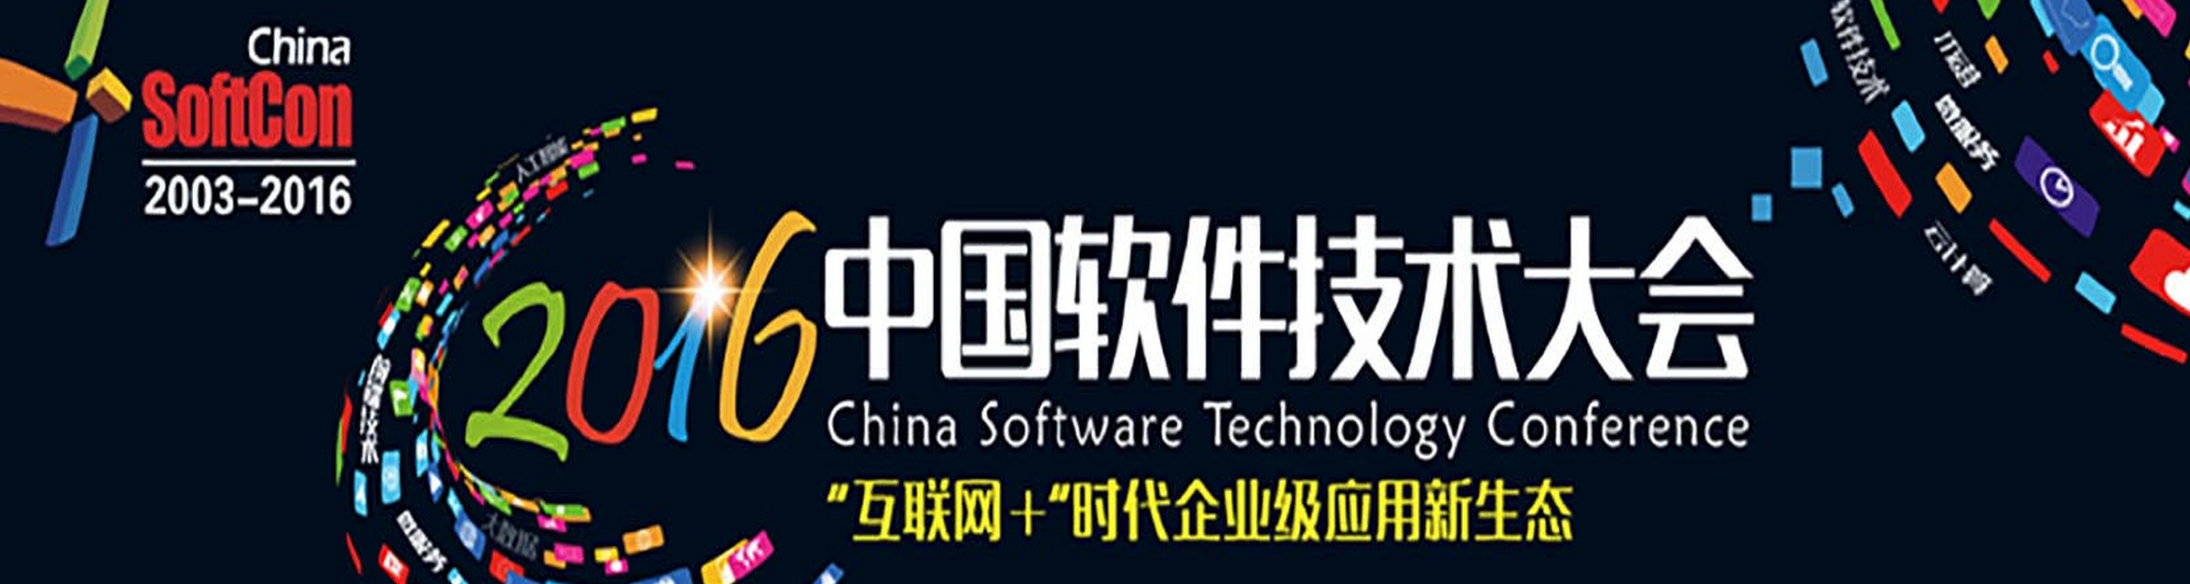 2016年中国软件技术大会